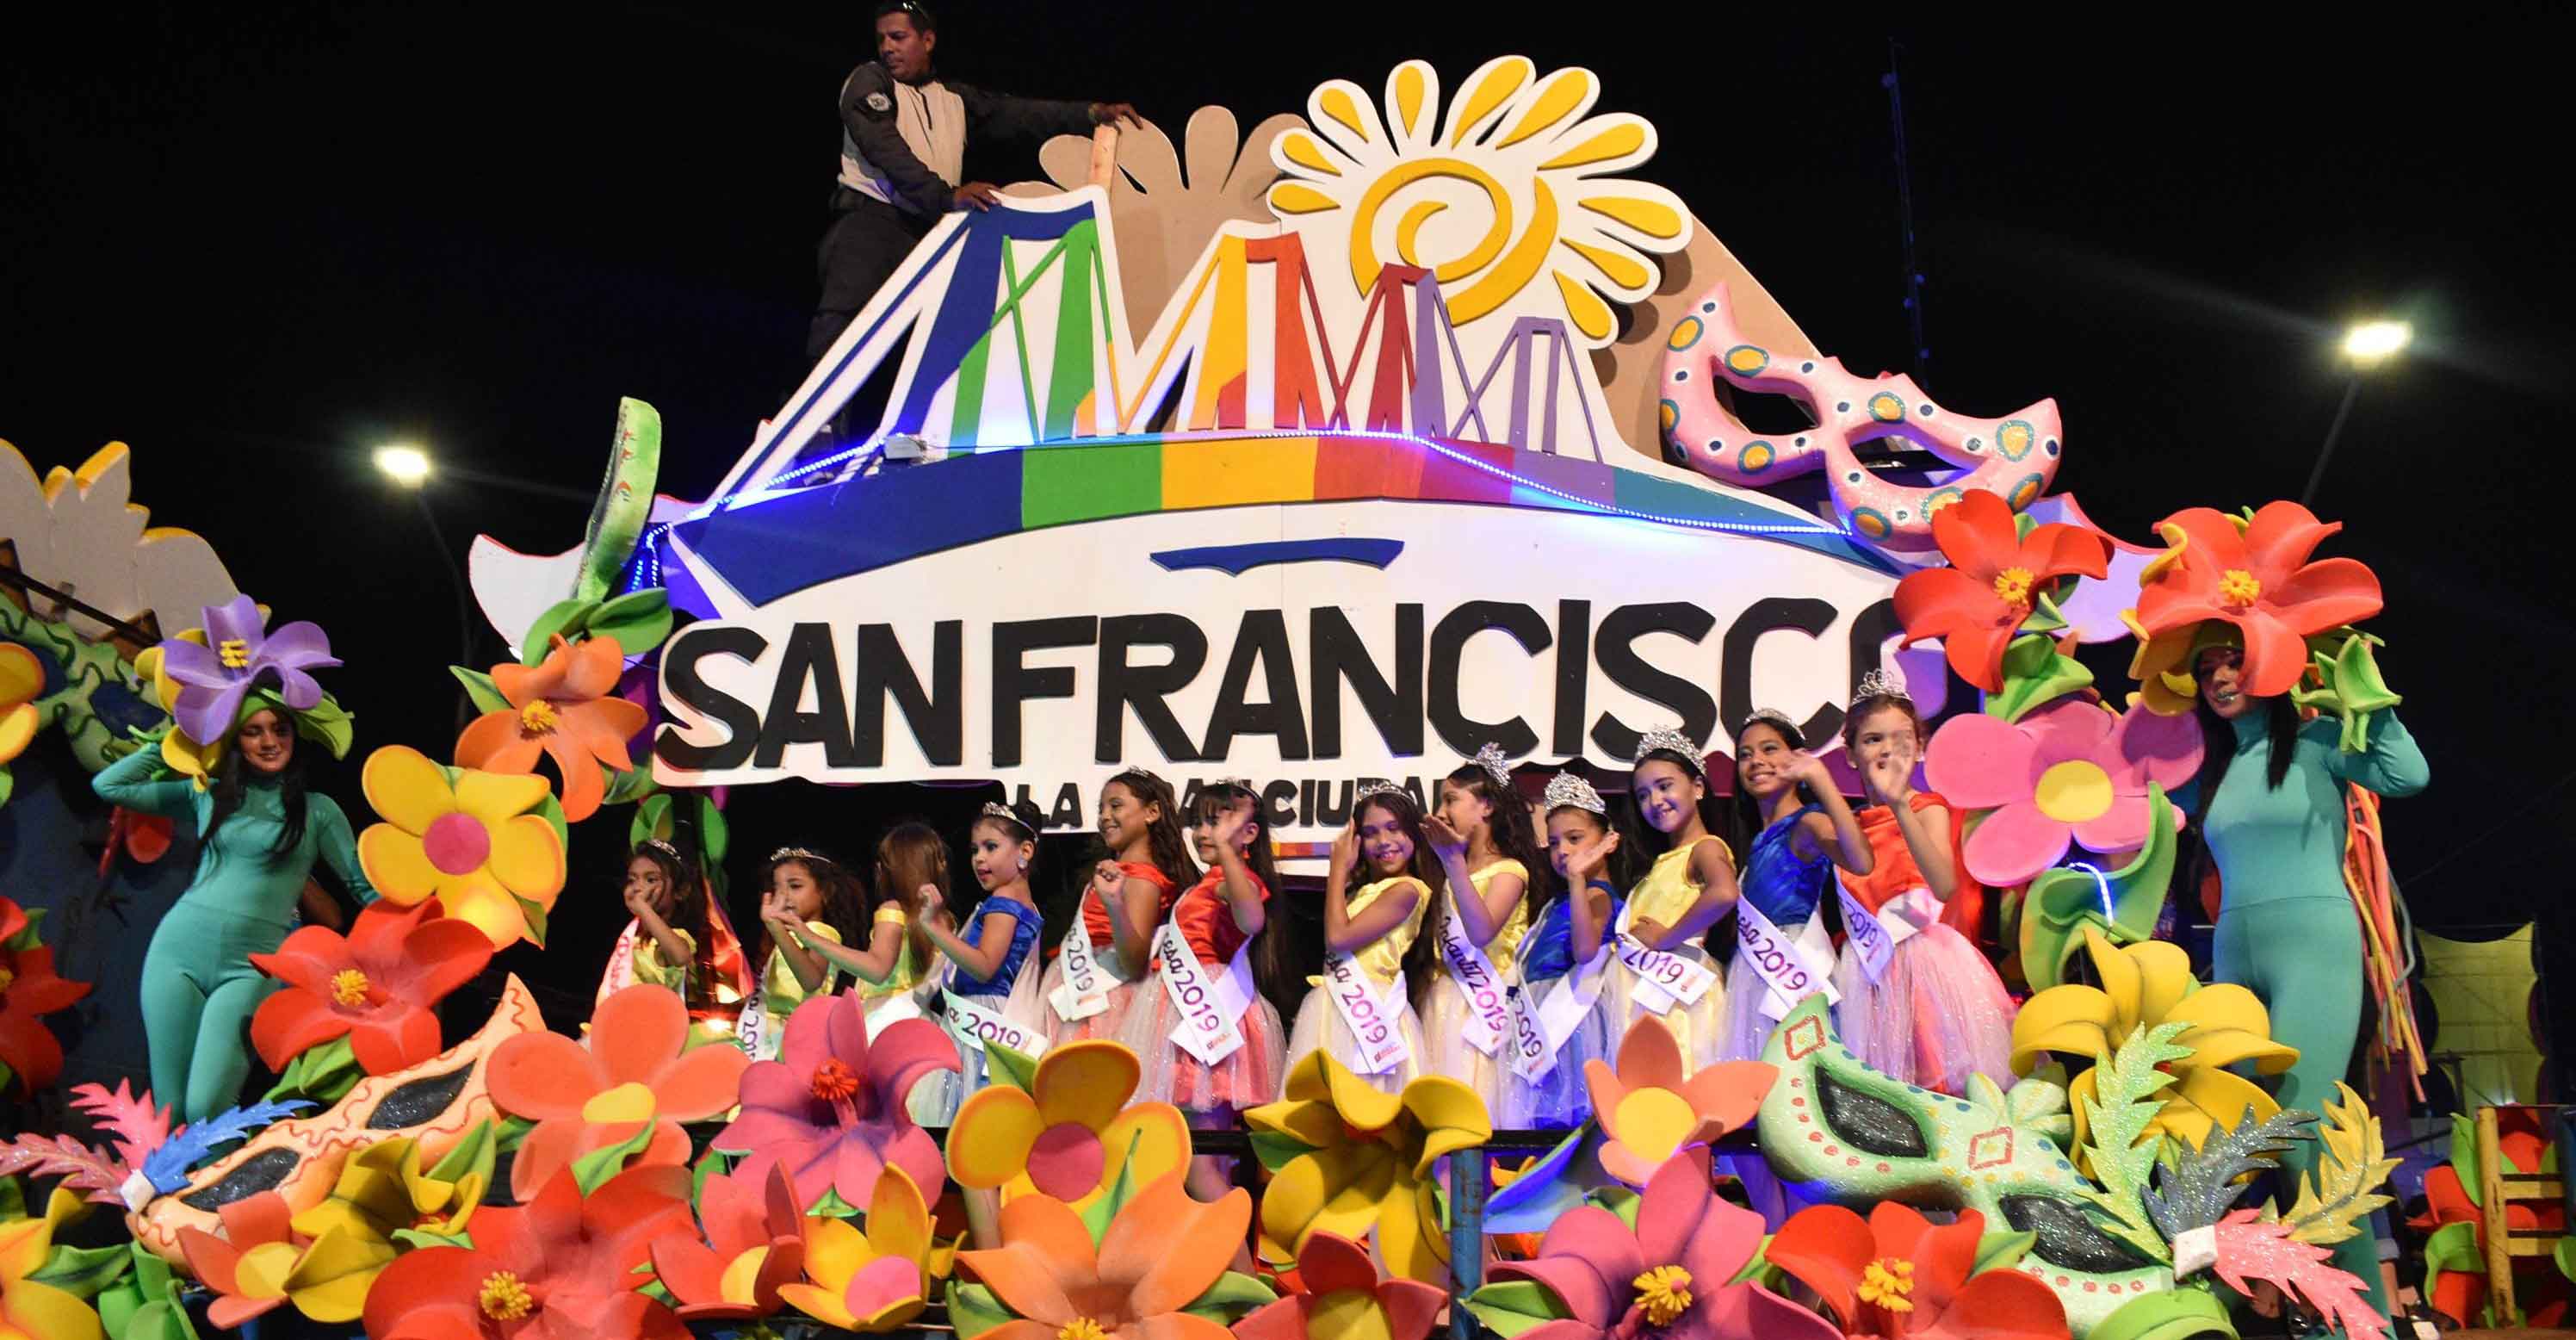 SAN FRANCISCO! Más de 60 comparsas y carrozas participaron en el Desfile de  Octavita de Carnaval - Noticia al Minuto